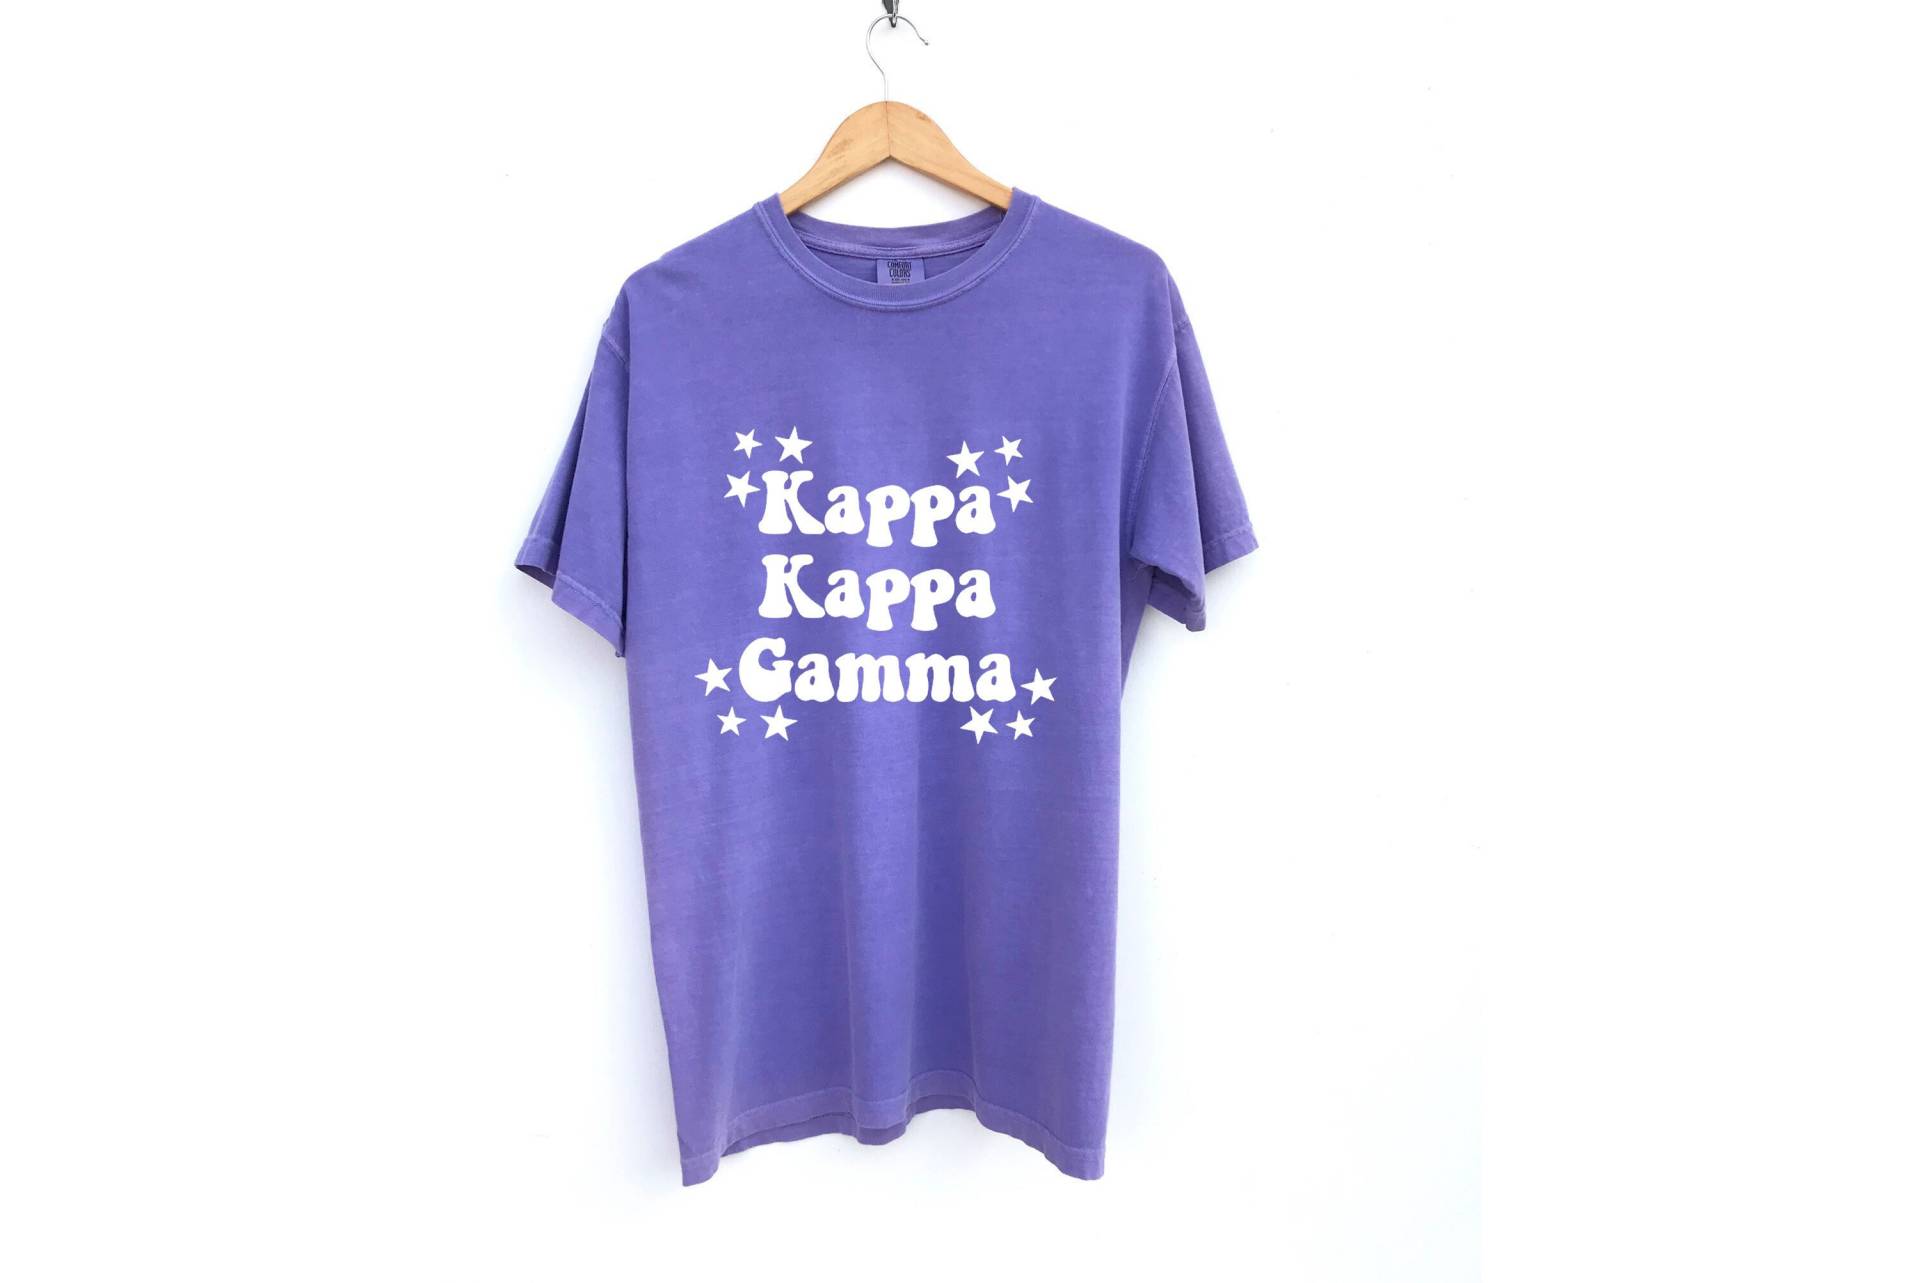 Kappa Gamma/sterne Sehendes Sorority Shirt Comfort Colors Weitere Farben Verfügbar von MadebyMollzShop